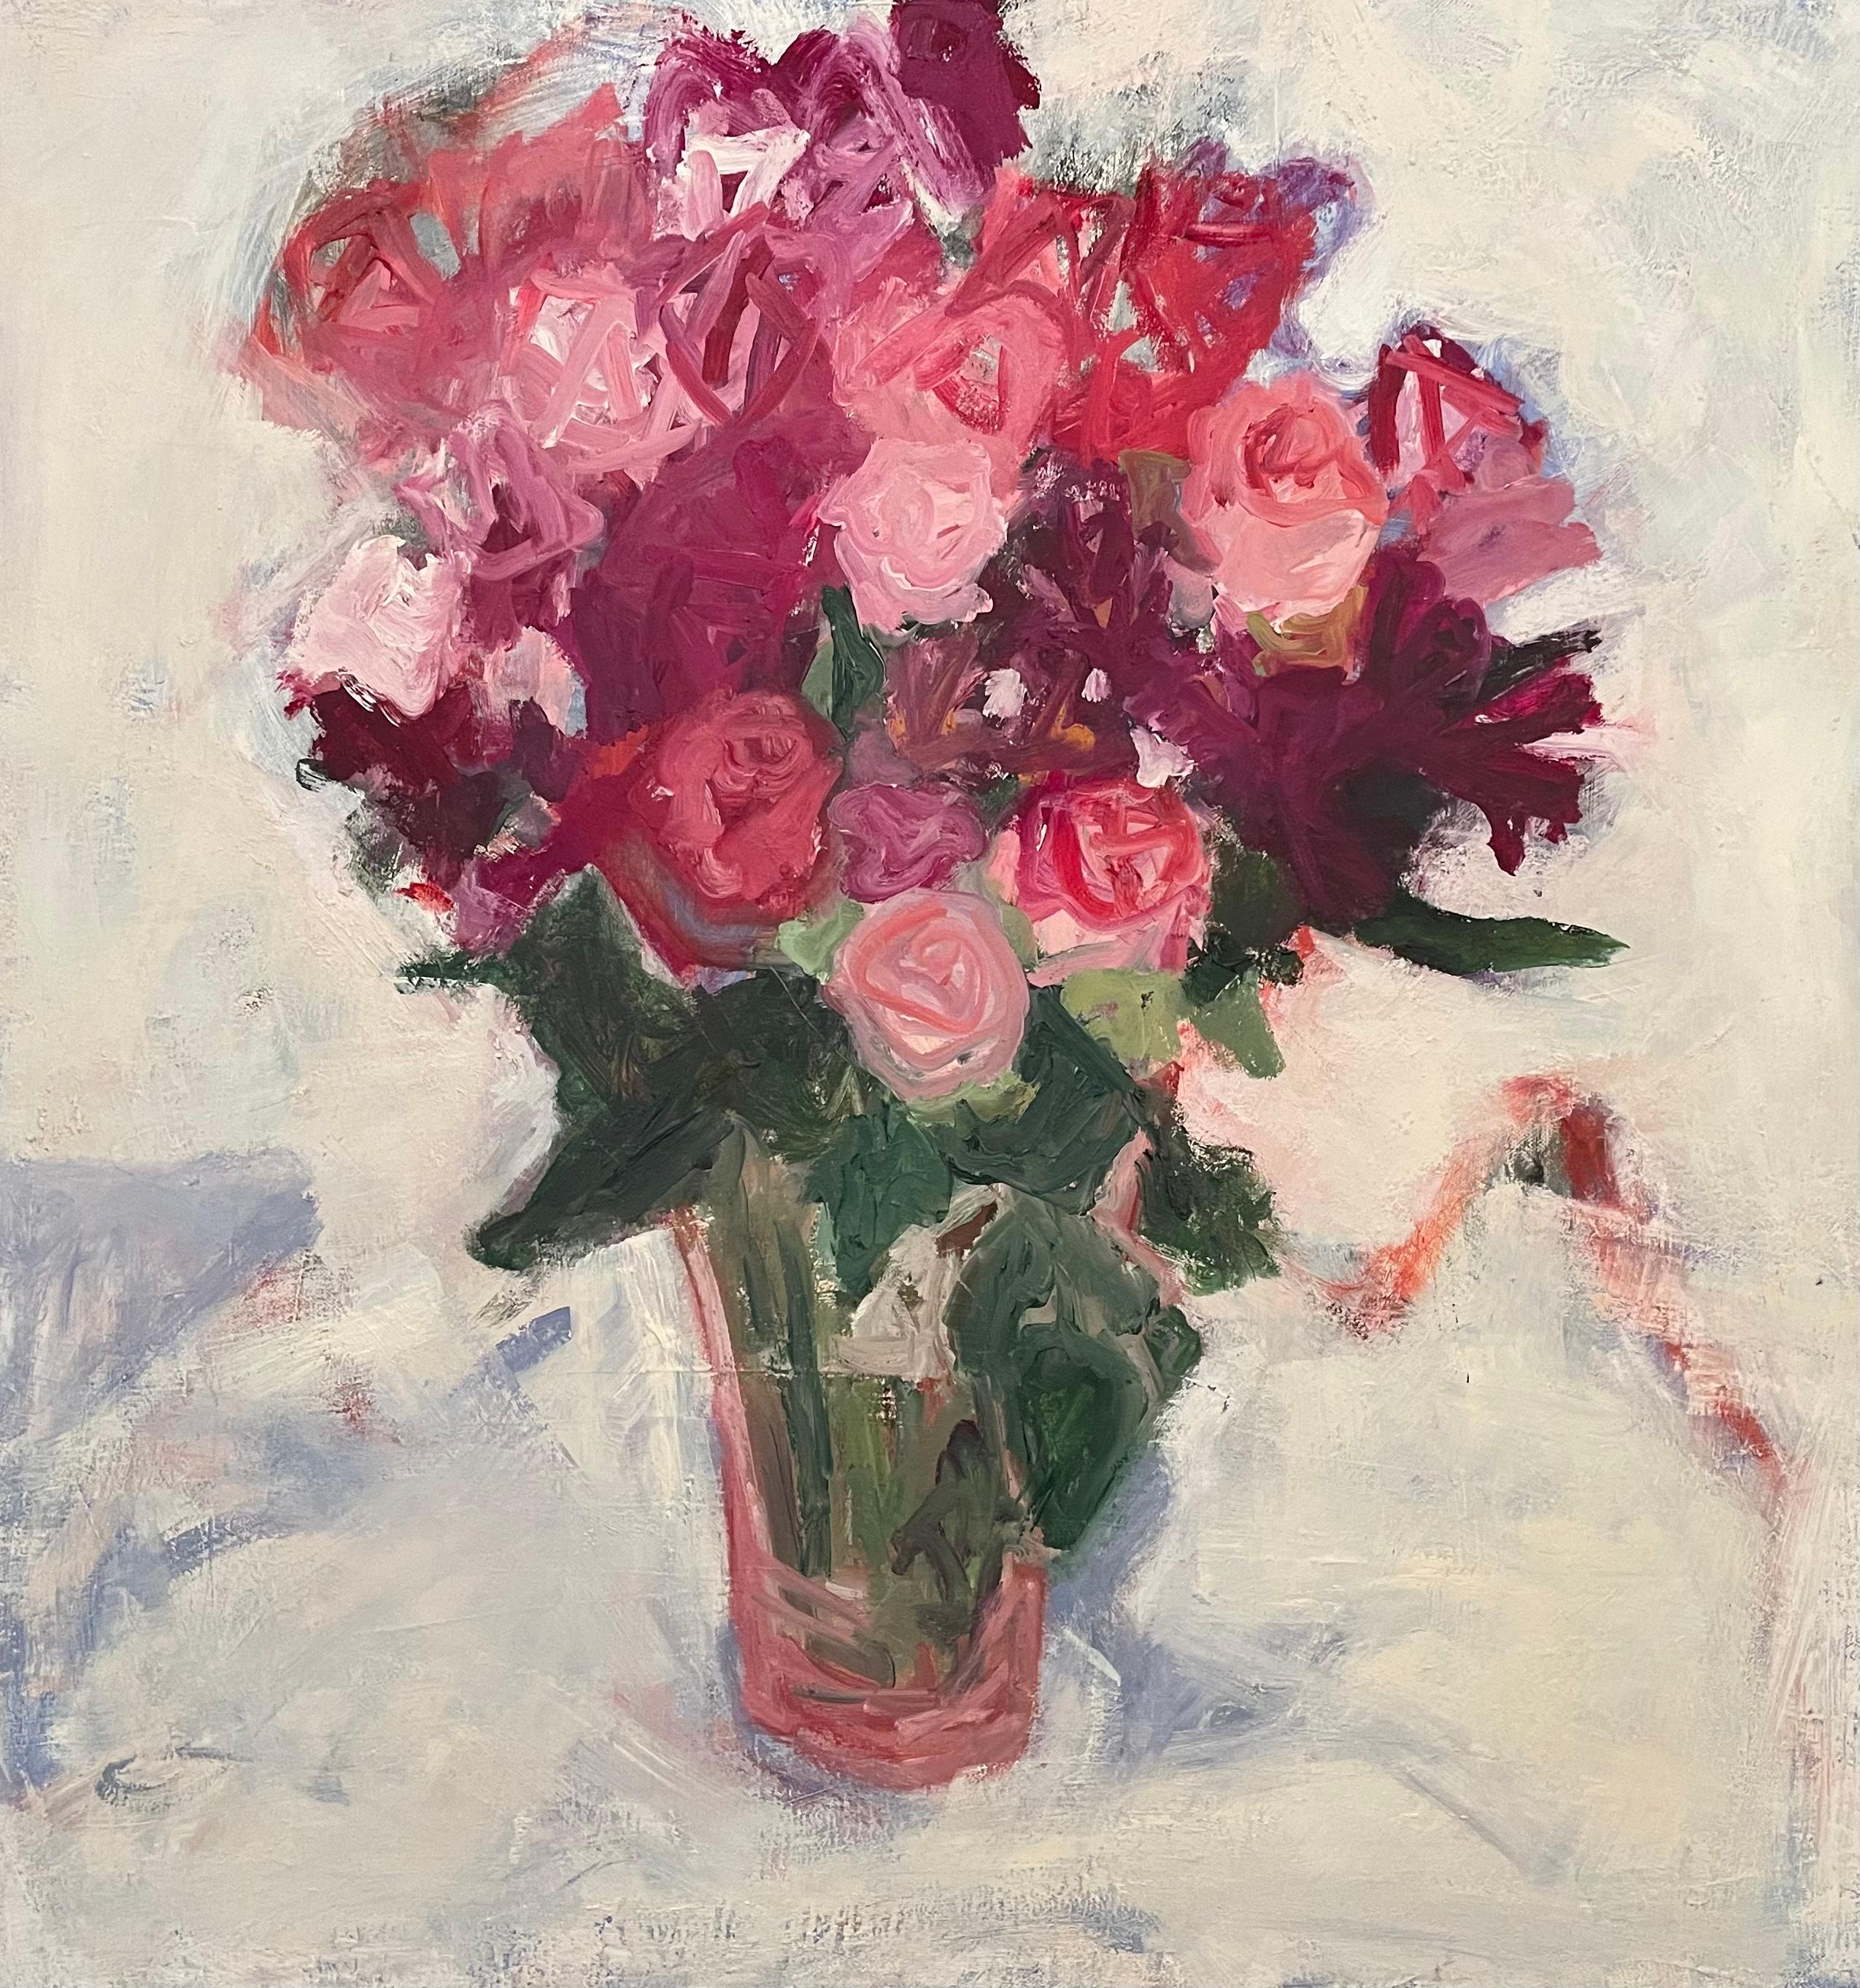 Roses" de Betsy Podlach est une vibrante nature morte expressionniste qui illustre la beauté éphémère des fleurs. L'artiste emploie une technique audacieuse d'empâtement, où des applications épaisses de peinture créent une surface texturée qui